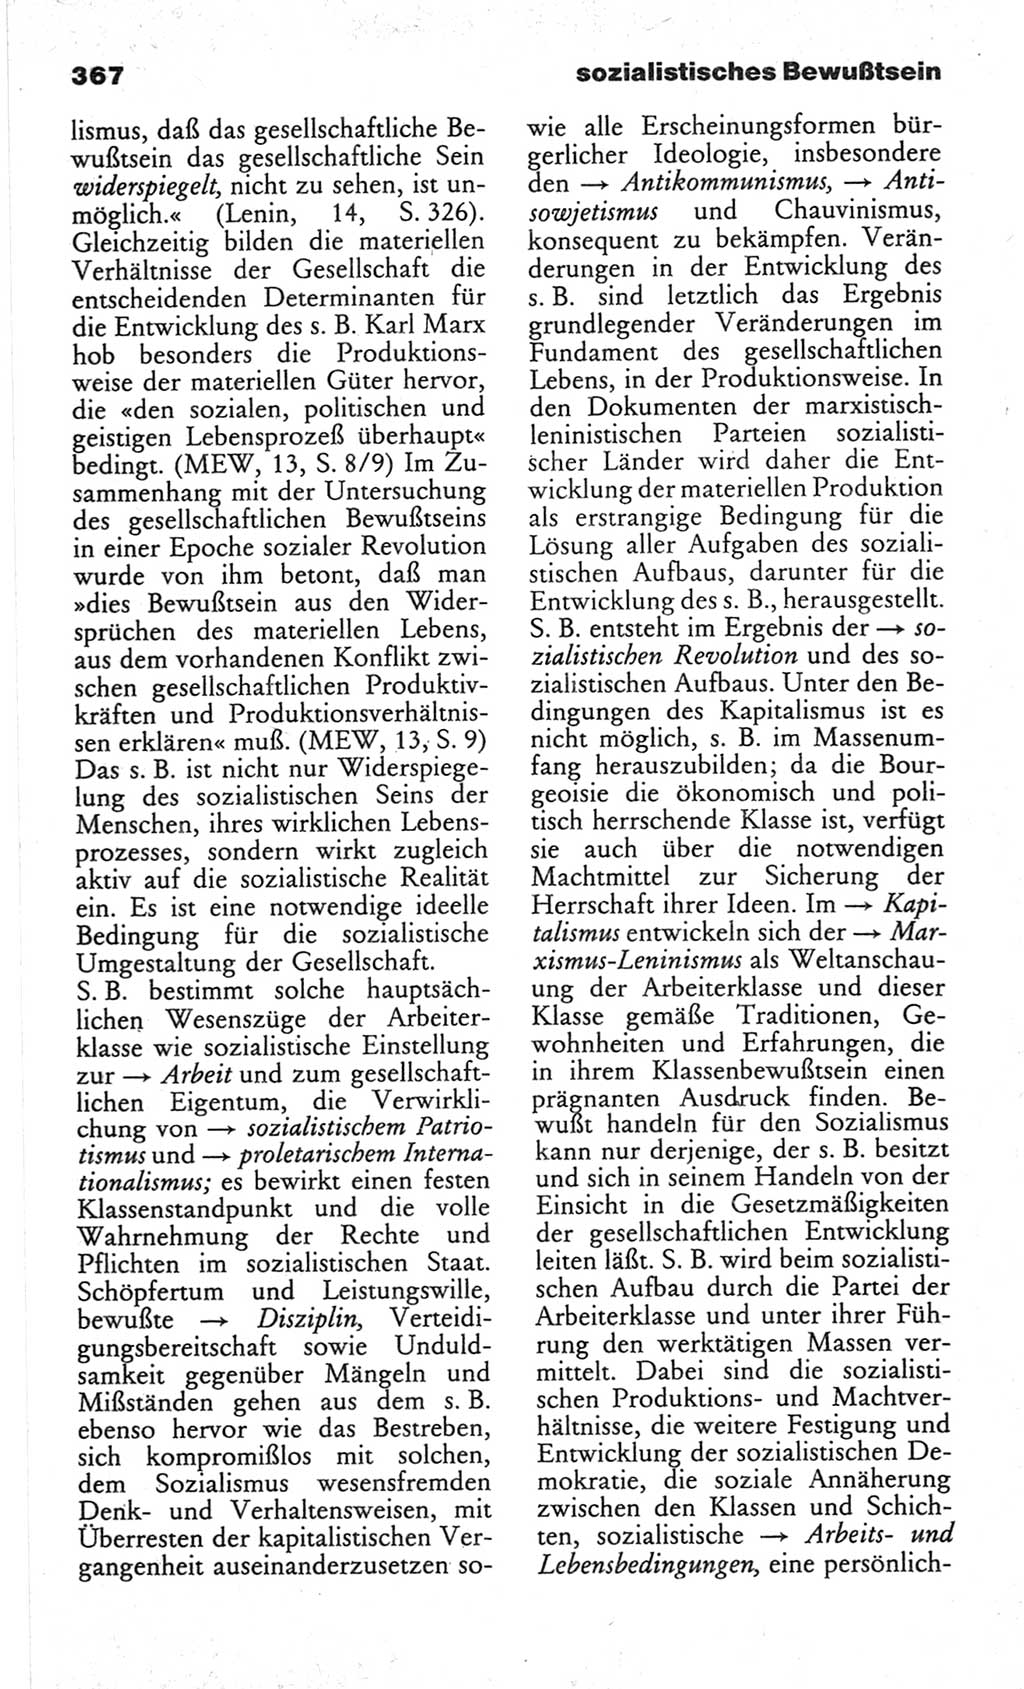 Wörterbuch des wissenschaftlichen Kommunismus [Deutsche Demokratische Republik (DDR)] 1982, Seite 367 (Wb. wiss. Komm. DDR 1982, S. 367)